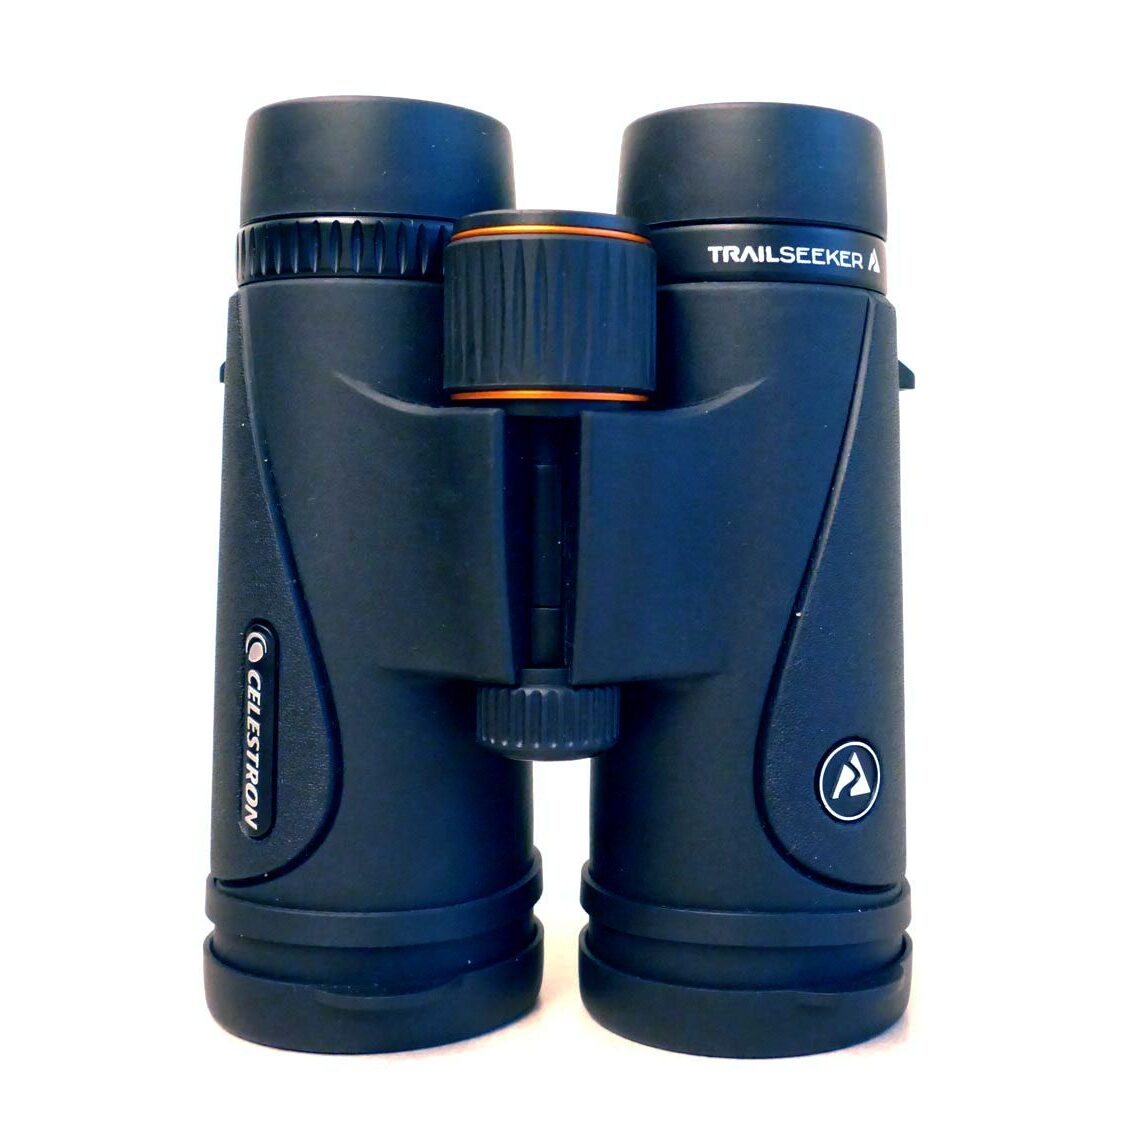 Celestron TrailSeeker 8x42 binoculars.